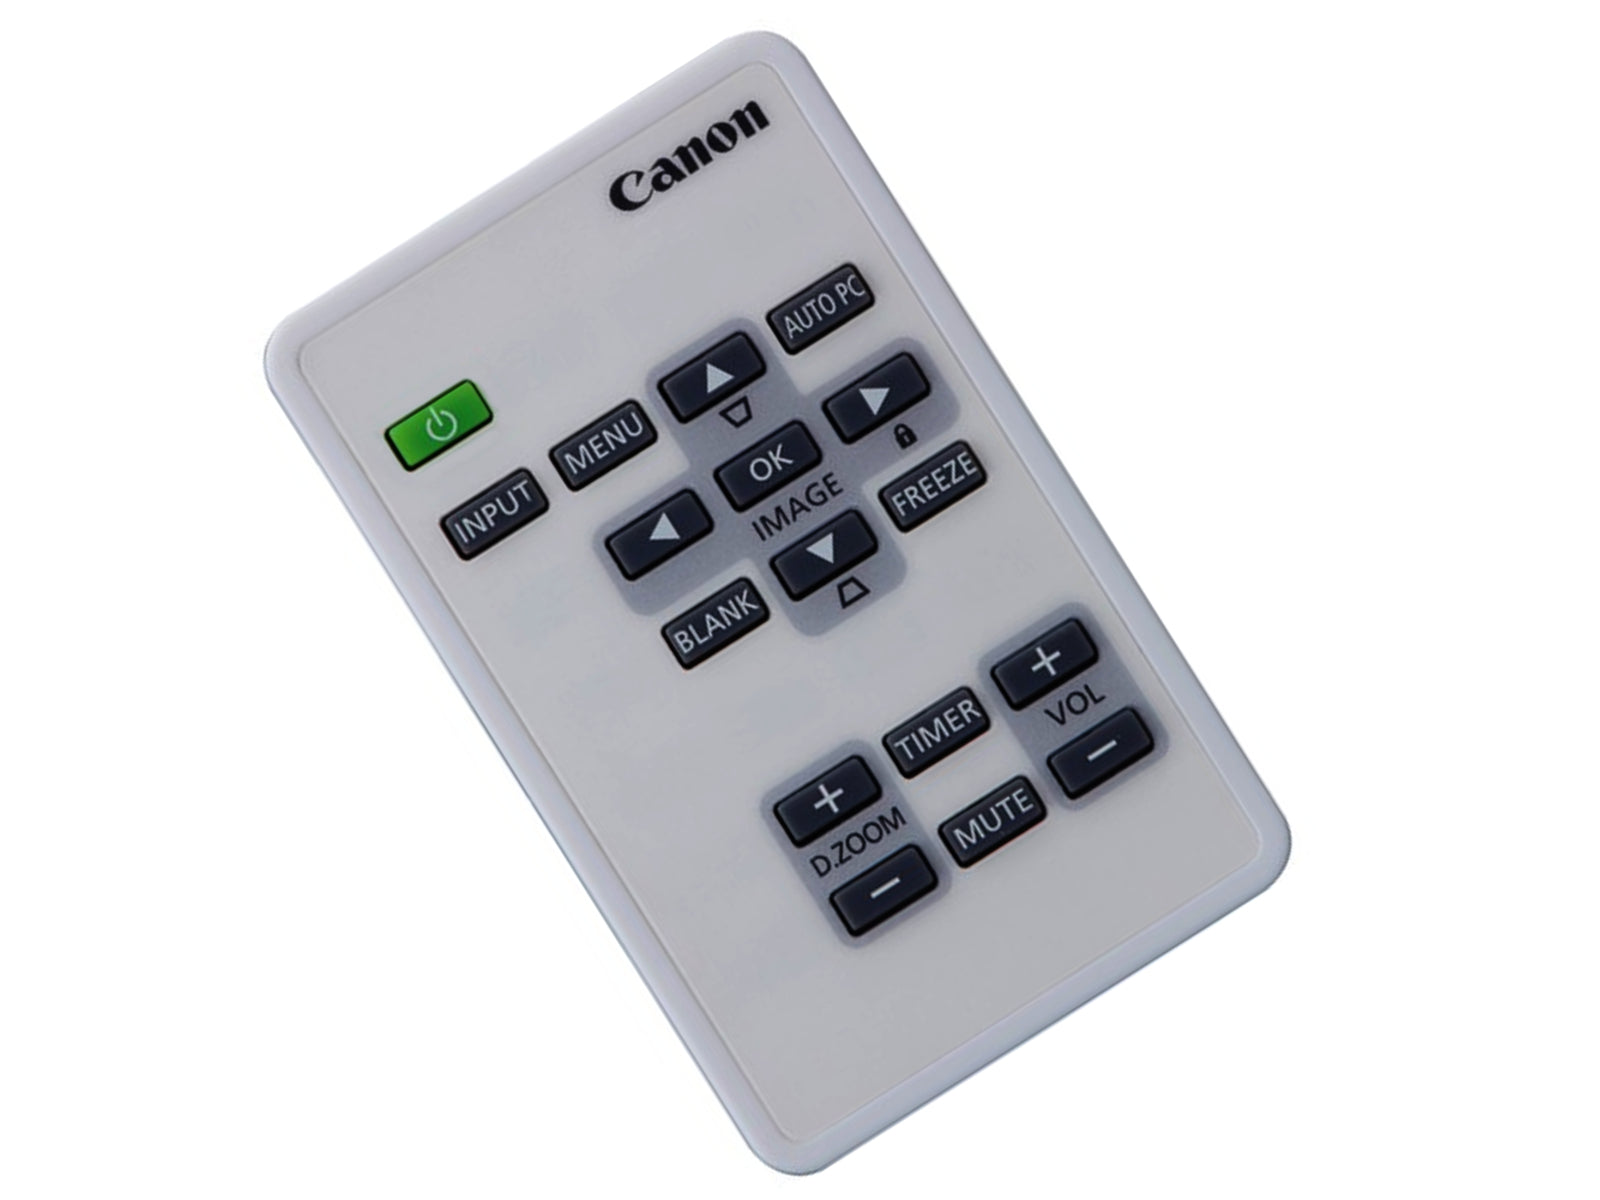 CANON original remote control LV-RC08, 0029C001 - Bild 1